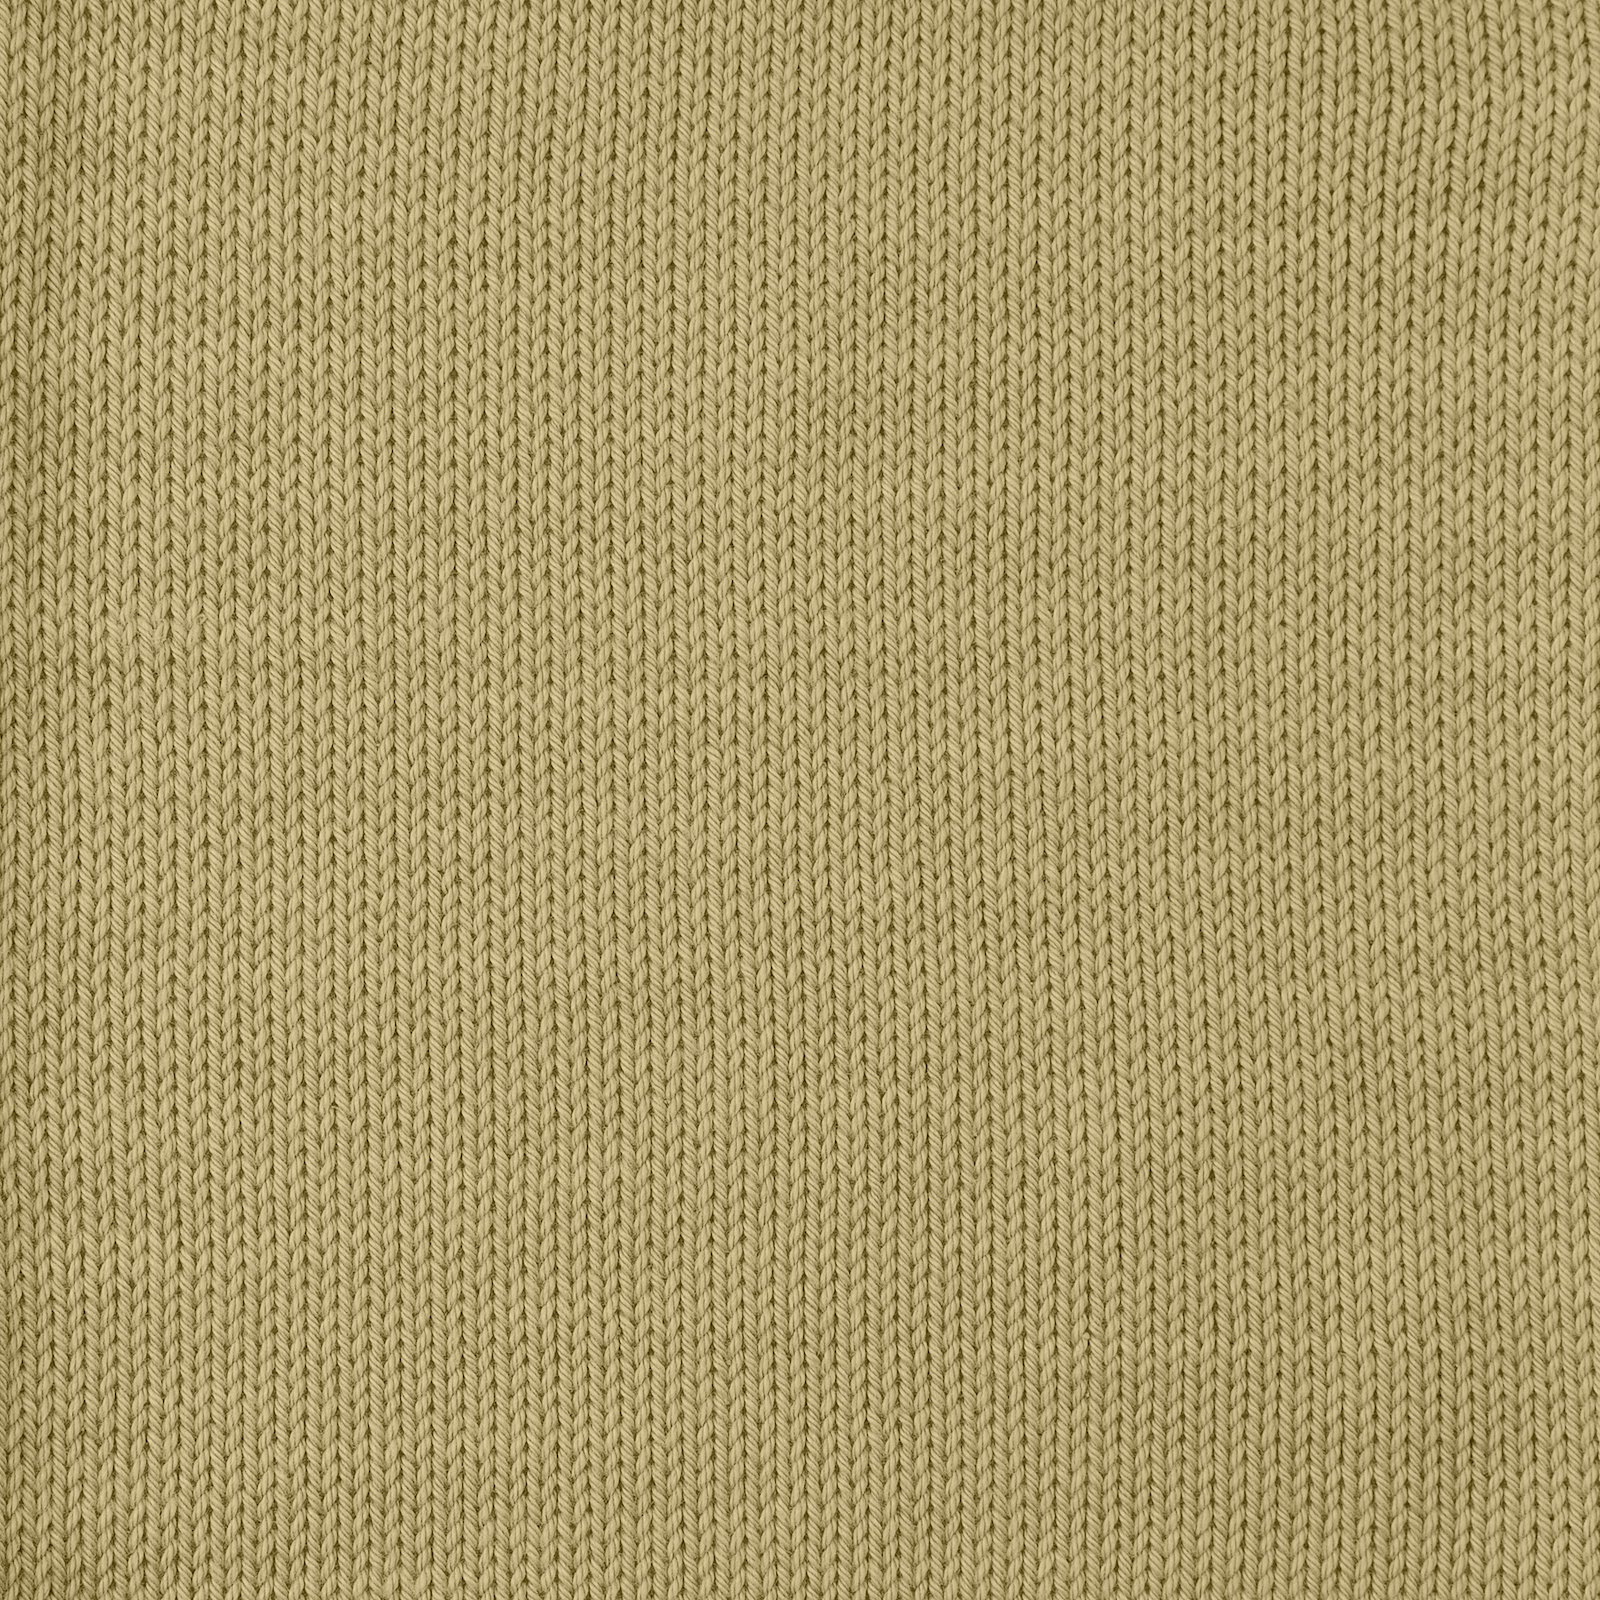 FRAYA, 100% cotton 8/4  yarn  "Colourful", light kaki 90060085_sskit